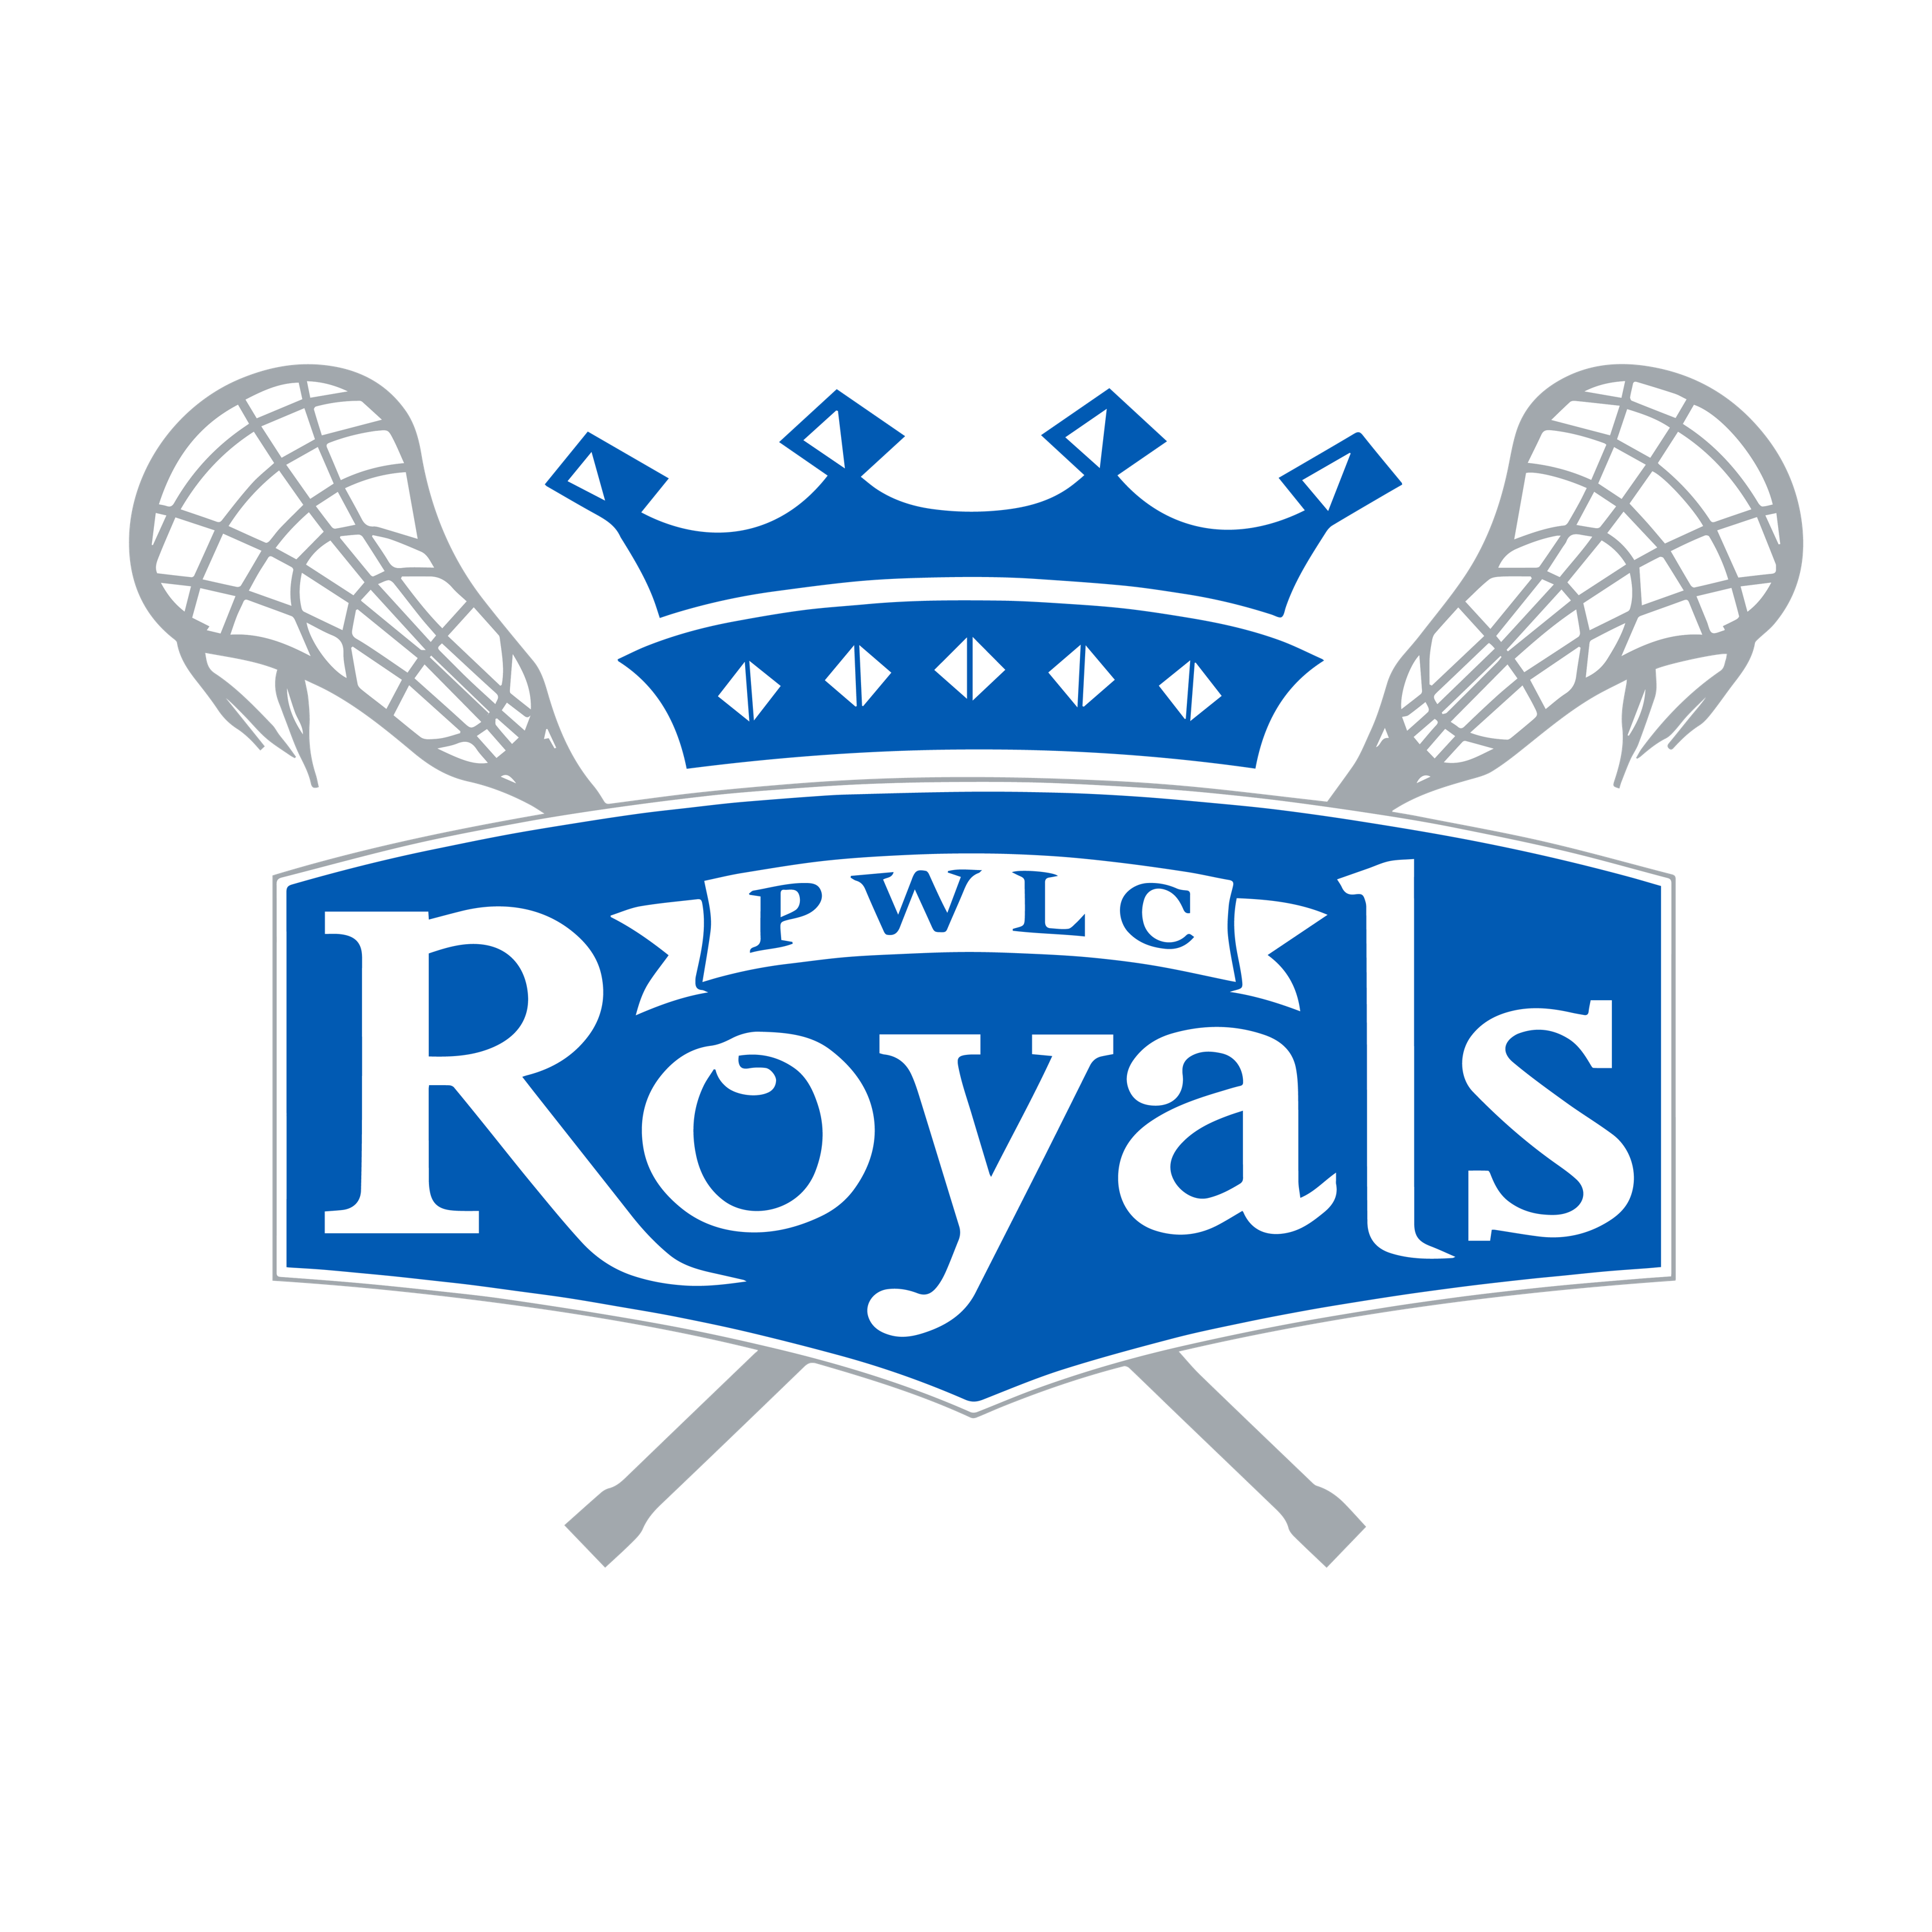 Prince William Royals Lacrosse – Signature Lacrosse